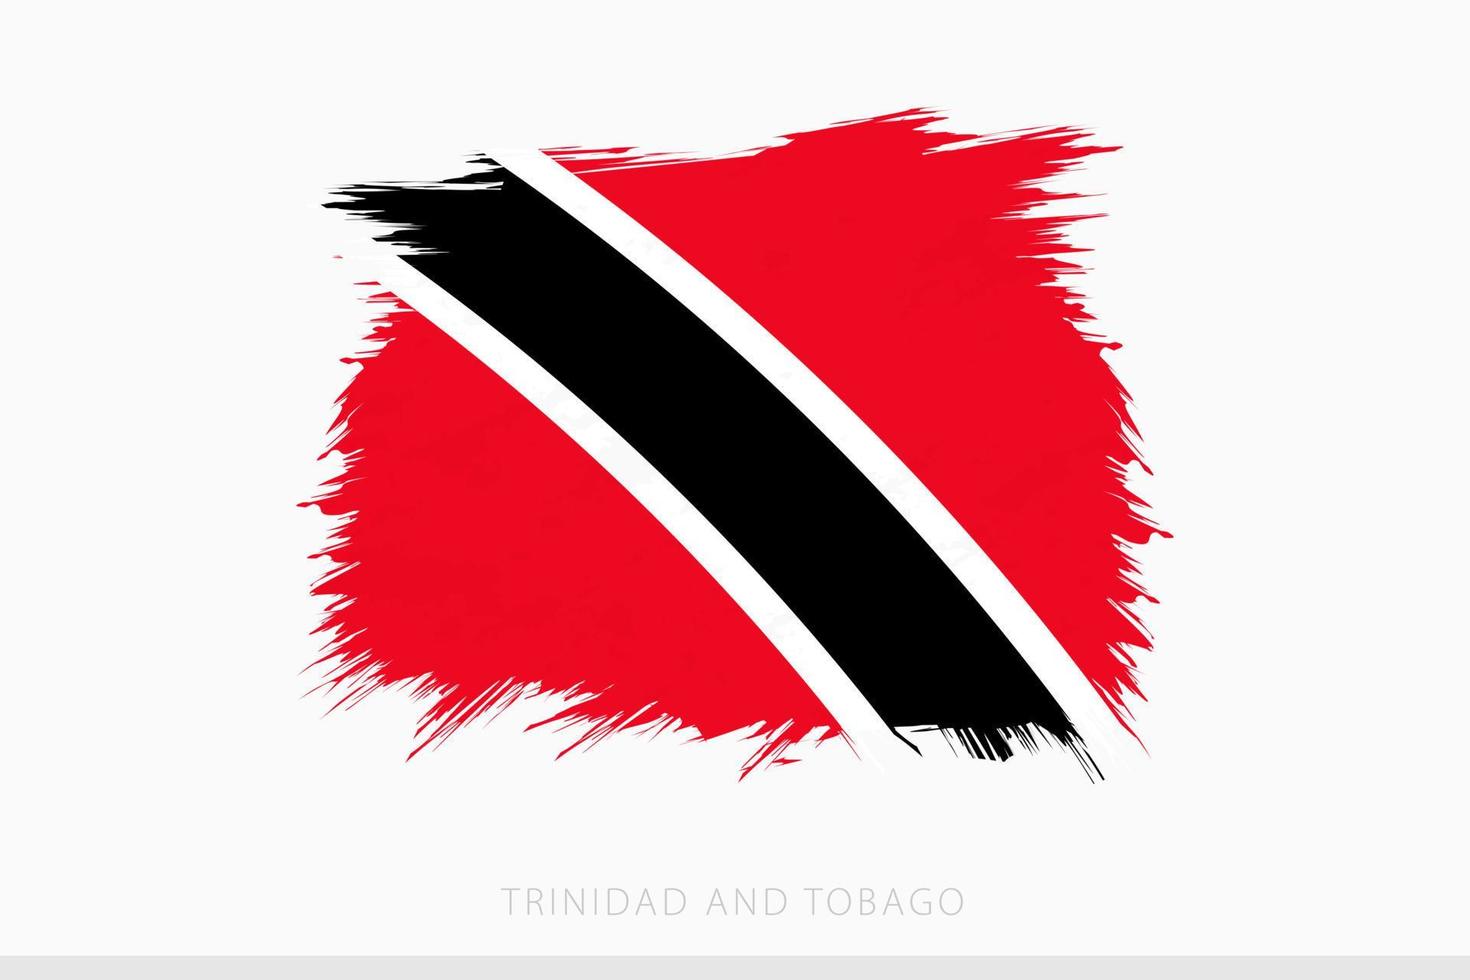 Grunge flag of Trinidad and Tobago, vector abstract grunge brushed flag of Trinidad and Tobago.